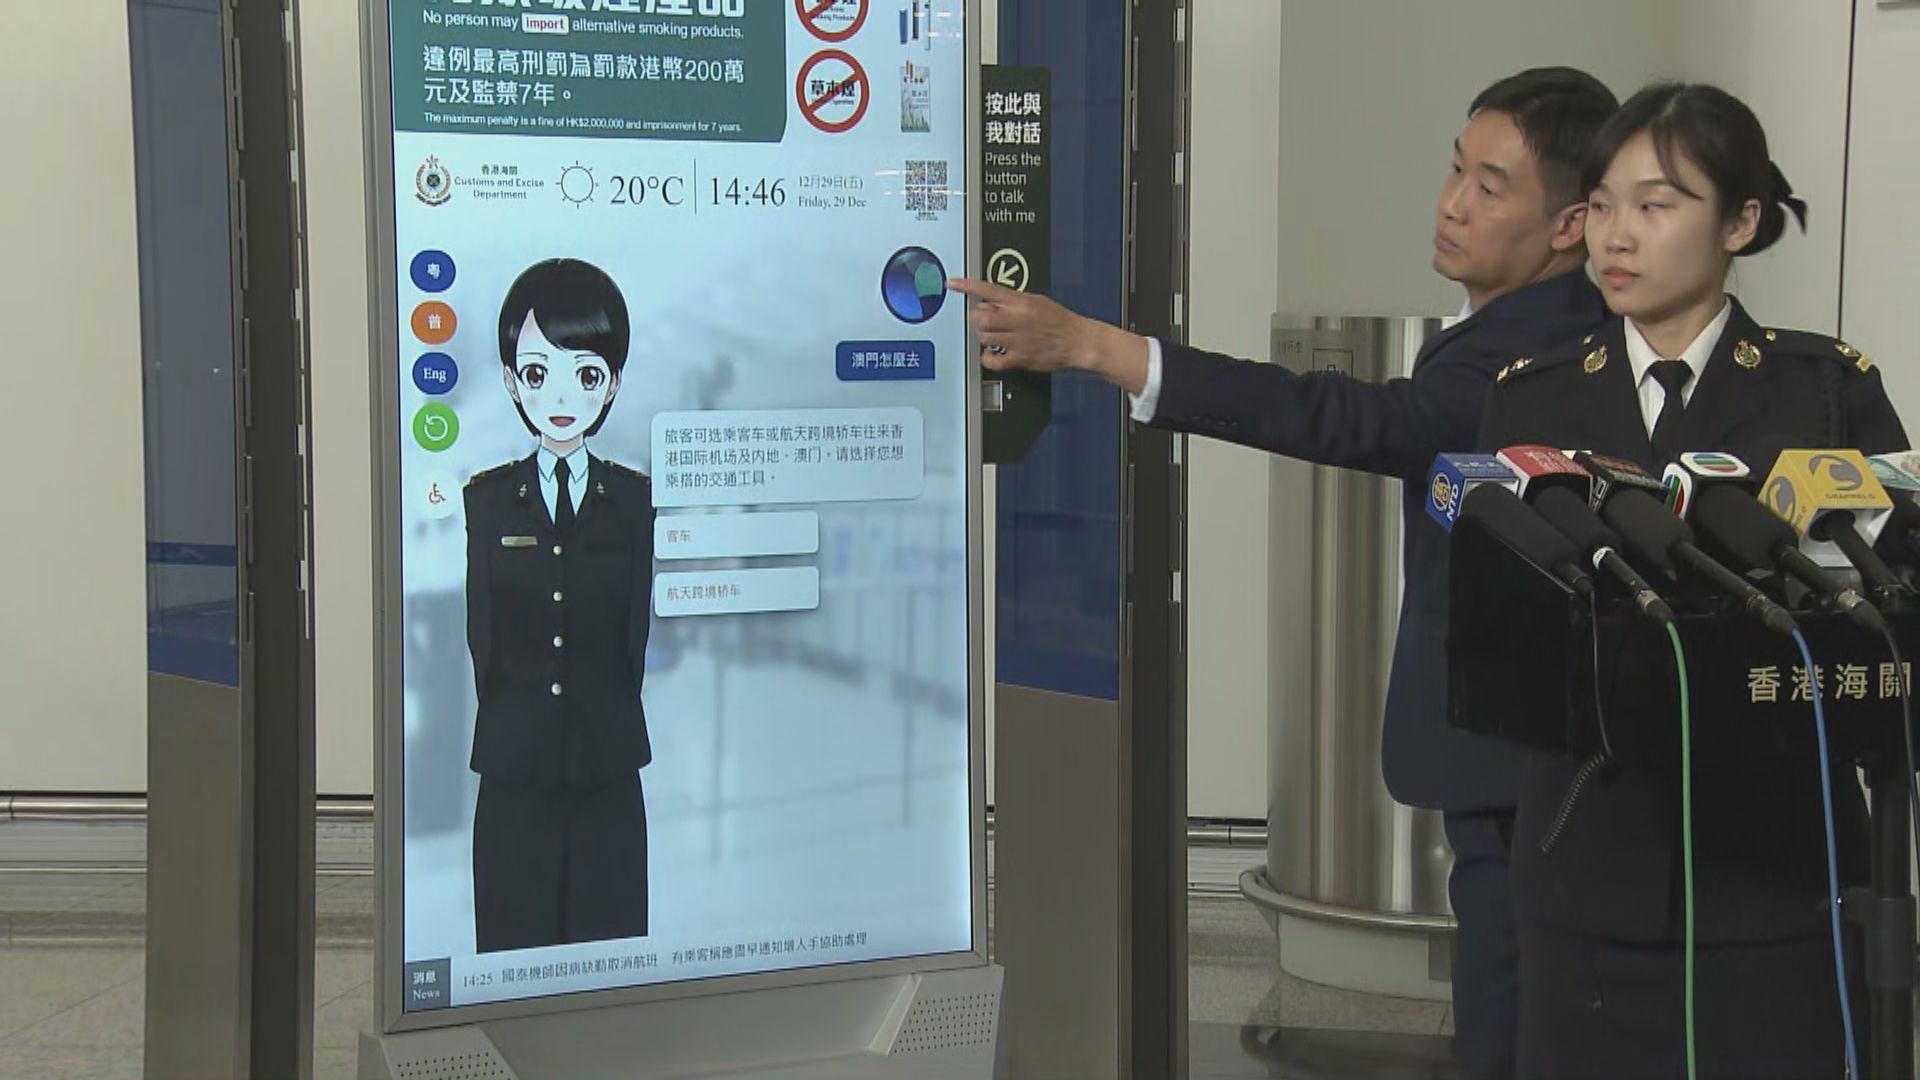 海關於機場等設人工智能系統 解答旅客查詢